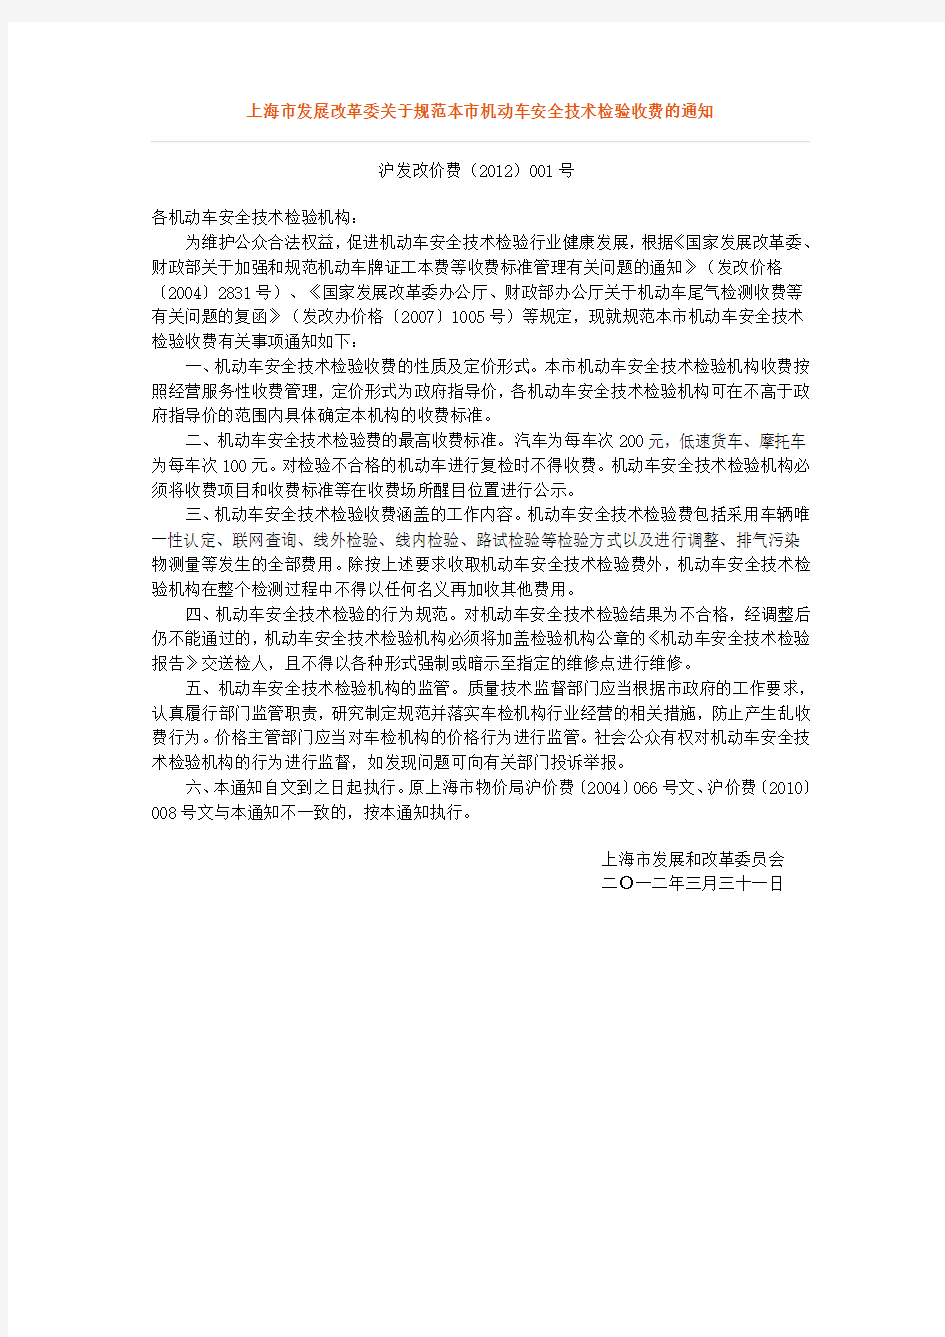 上海市发展改革委关于规范本市机动车安全技术检验收费的通知